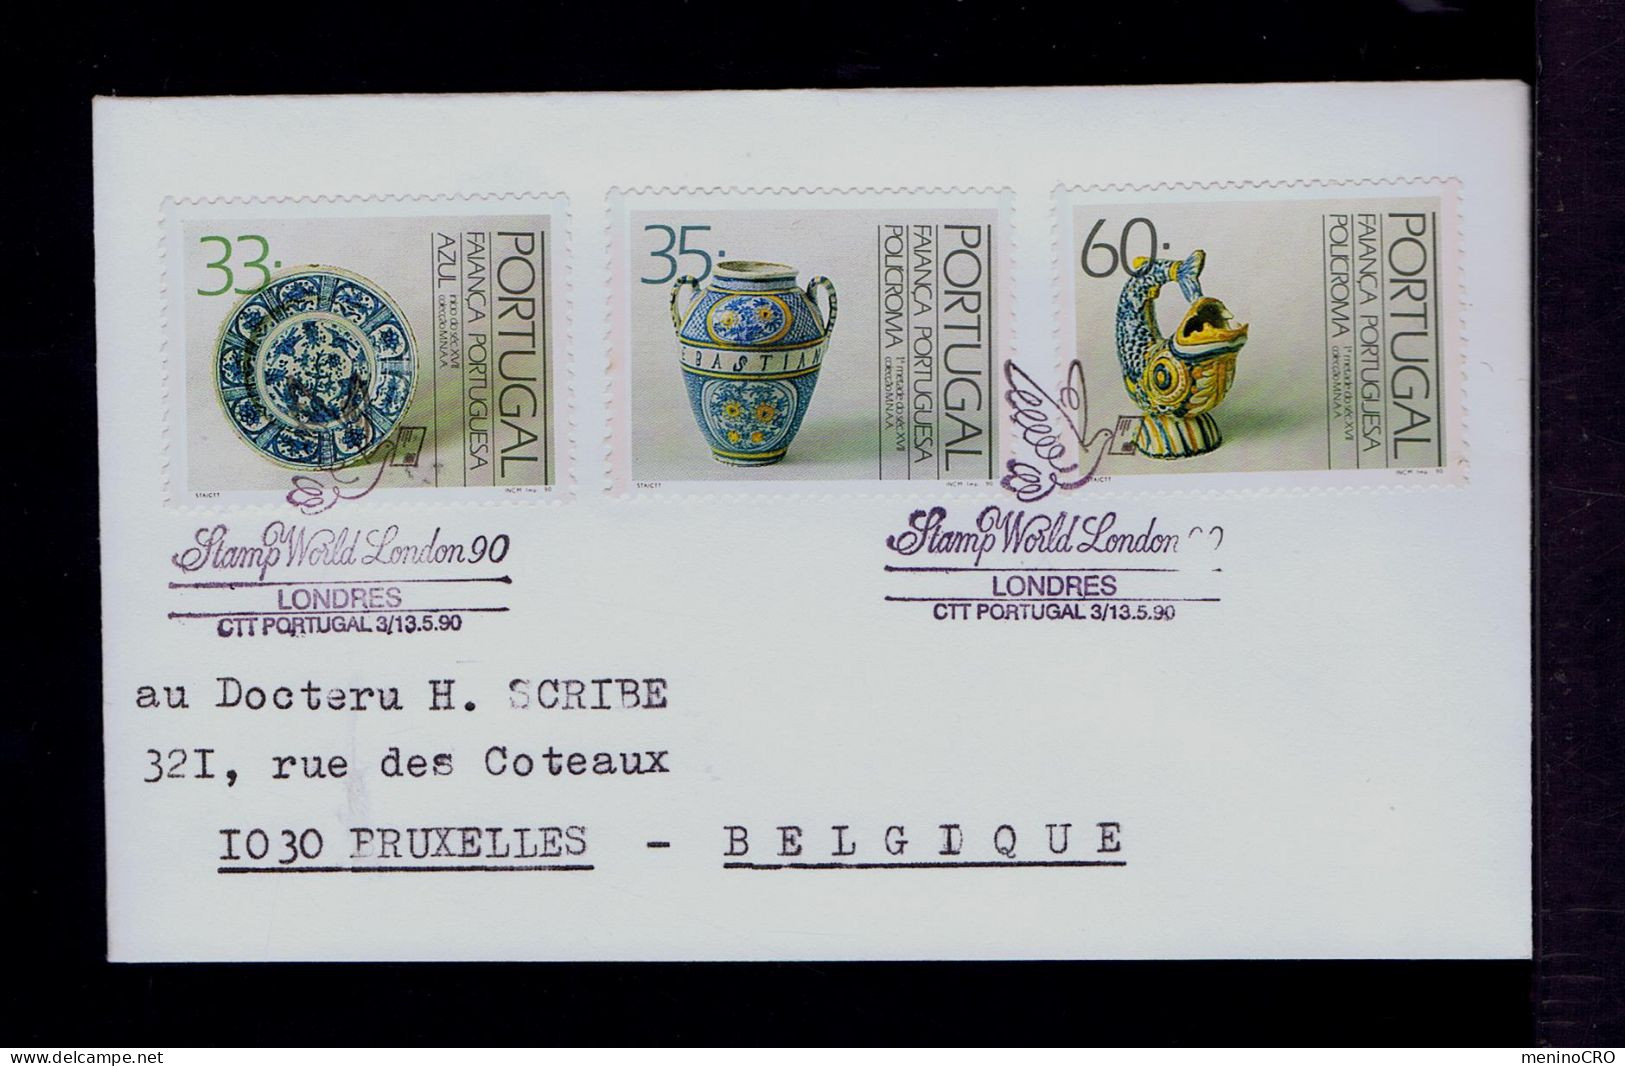 Gc8372 PORTUGAL "Stamp World London'90" -SPECIAL Pmk) Faiance Blue Porcelain Costumes Cultures Mailed Londres »Bruxelles - Porcelain